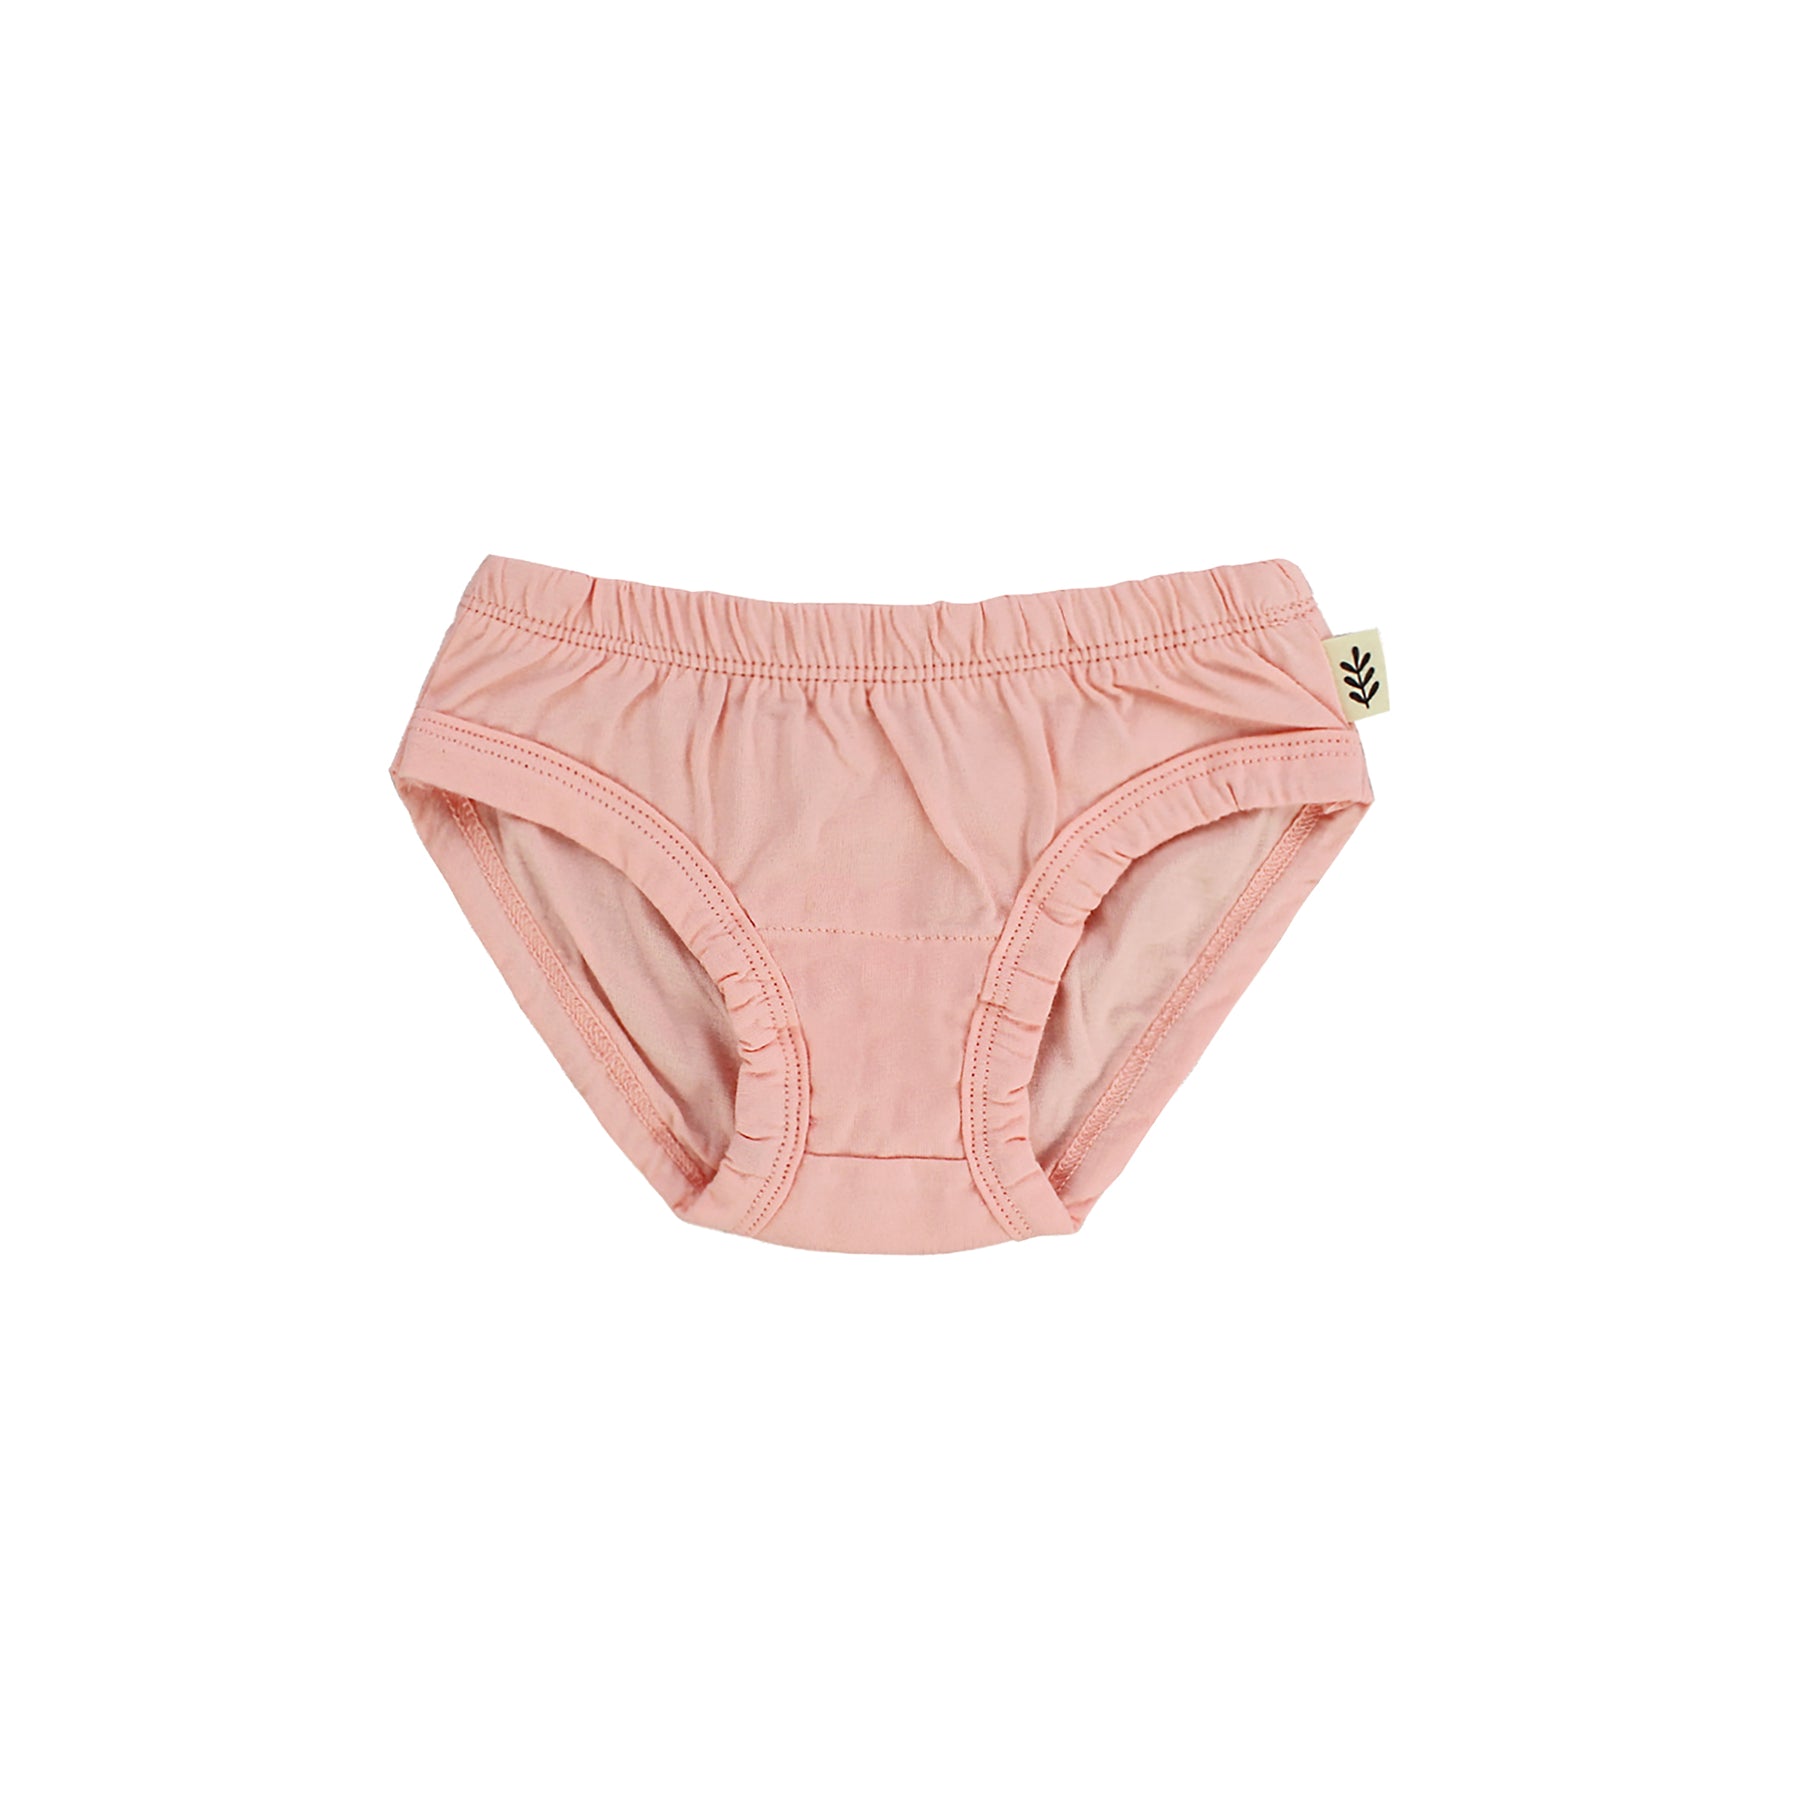 Toddler Underwear Kids Undies Girls Cotton Panties Size 7-8T (Pack of 6)